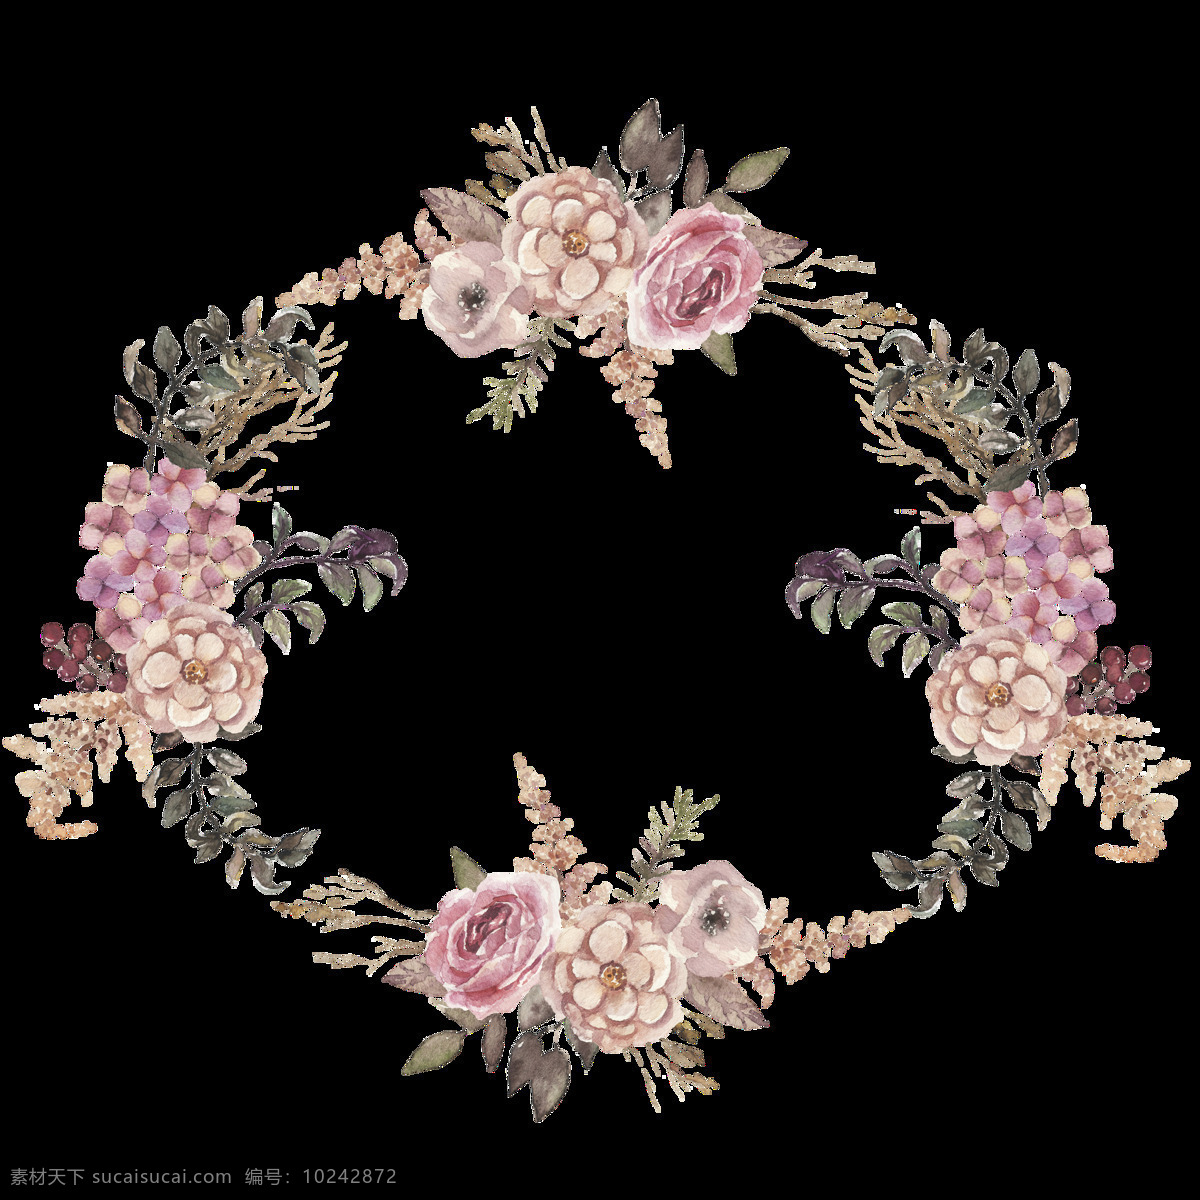 清香 花卉 透明 装饰 设计素材 背景素材